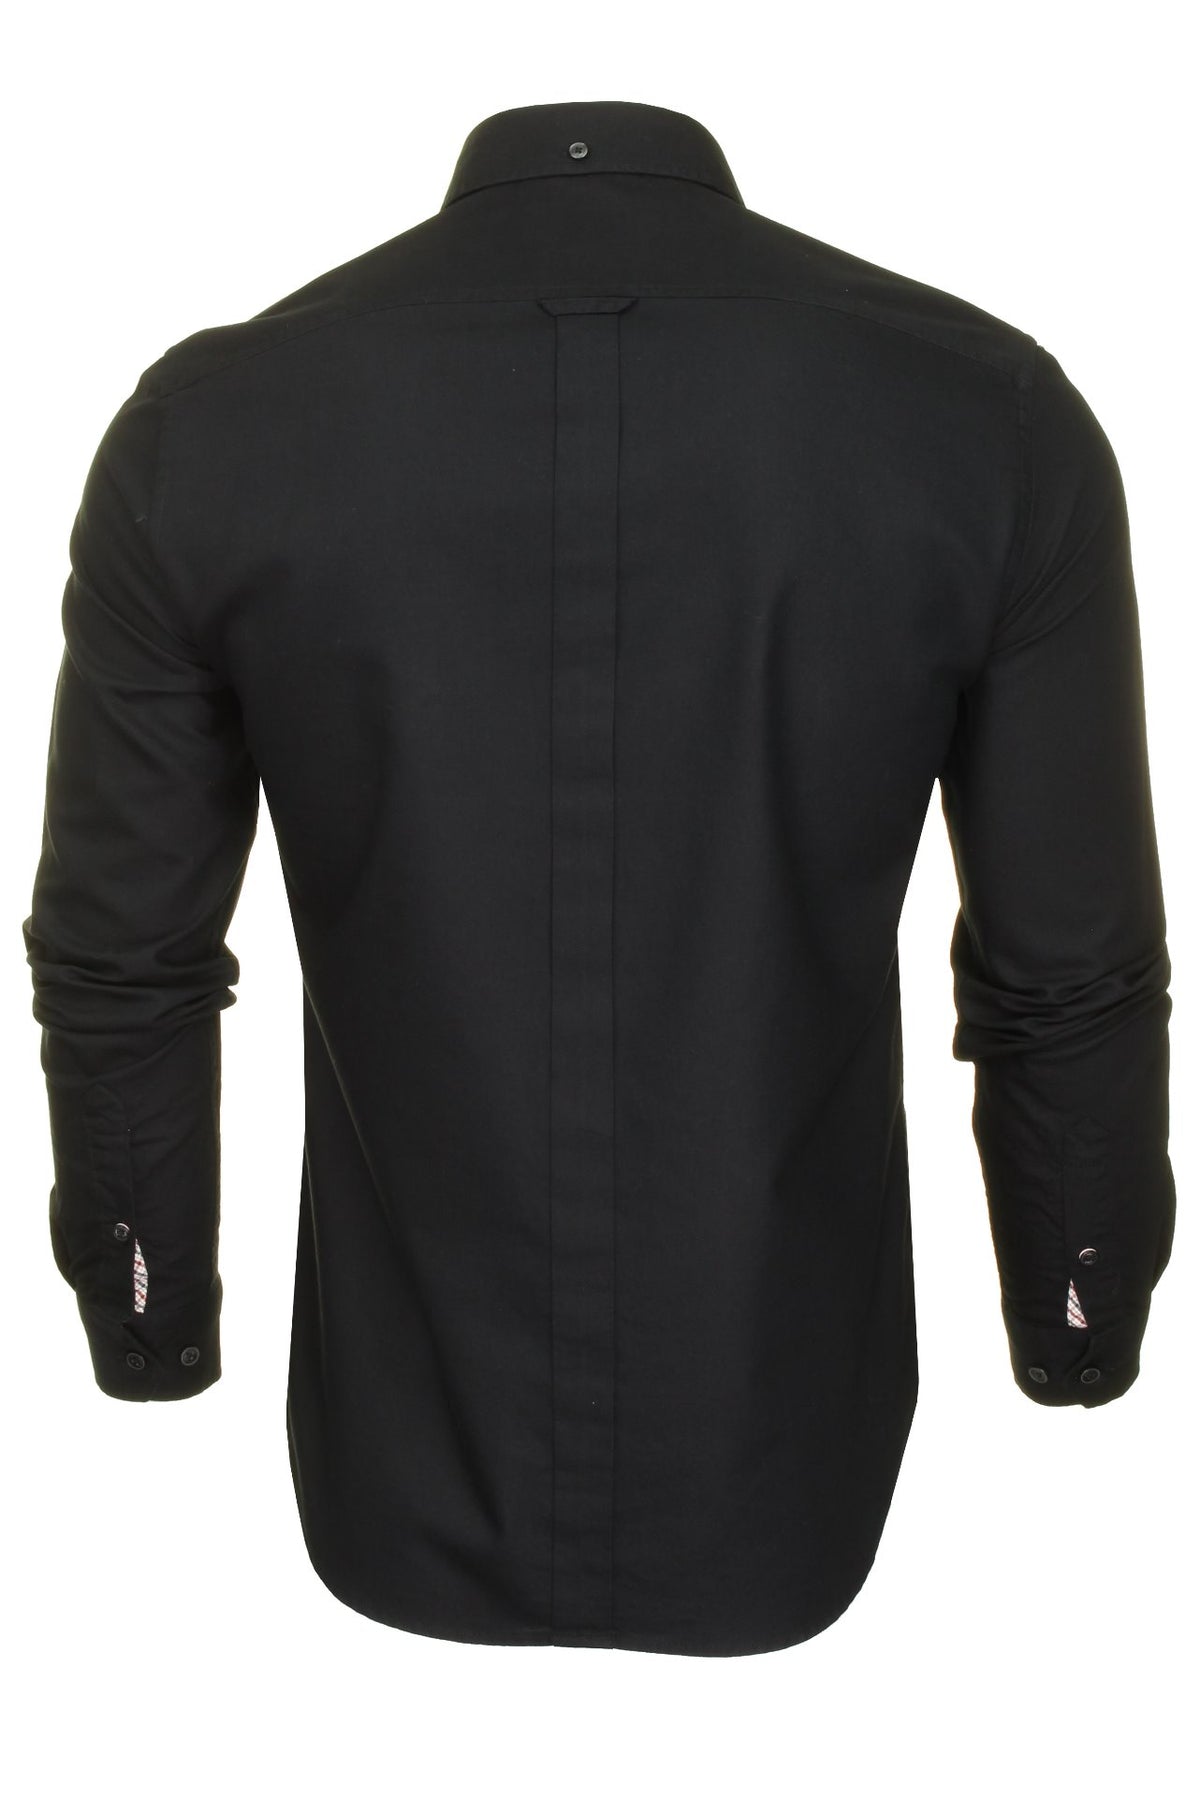 Ben Sherman Mens Oxford Shirt Long Sleeved (Embroidered Logo), 03, 48578, Black (Embroidered Pocket Logo)